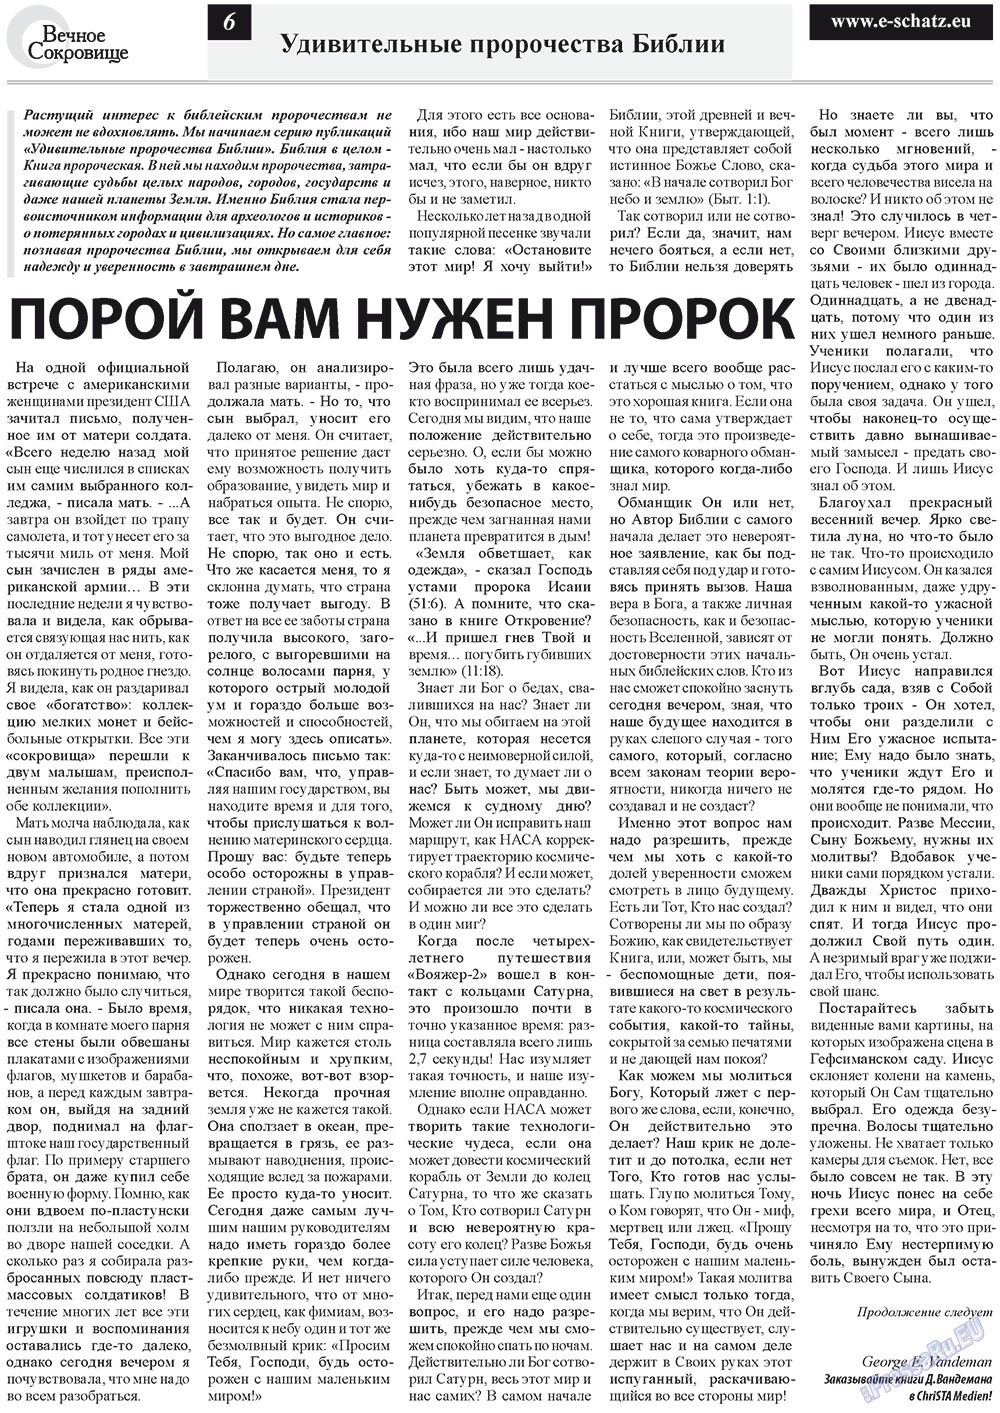 Вечное сокровище (газета). 2012 год, номер 3, стр. 6